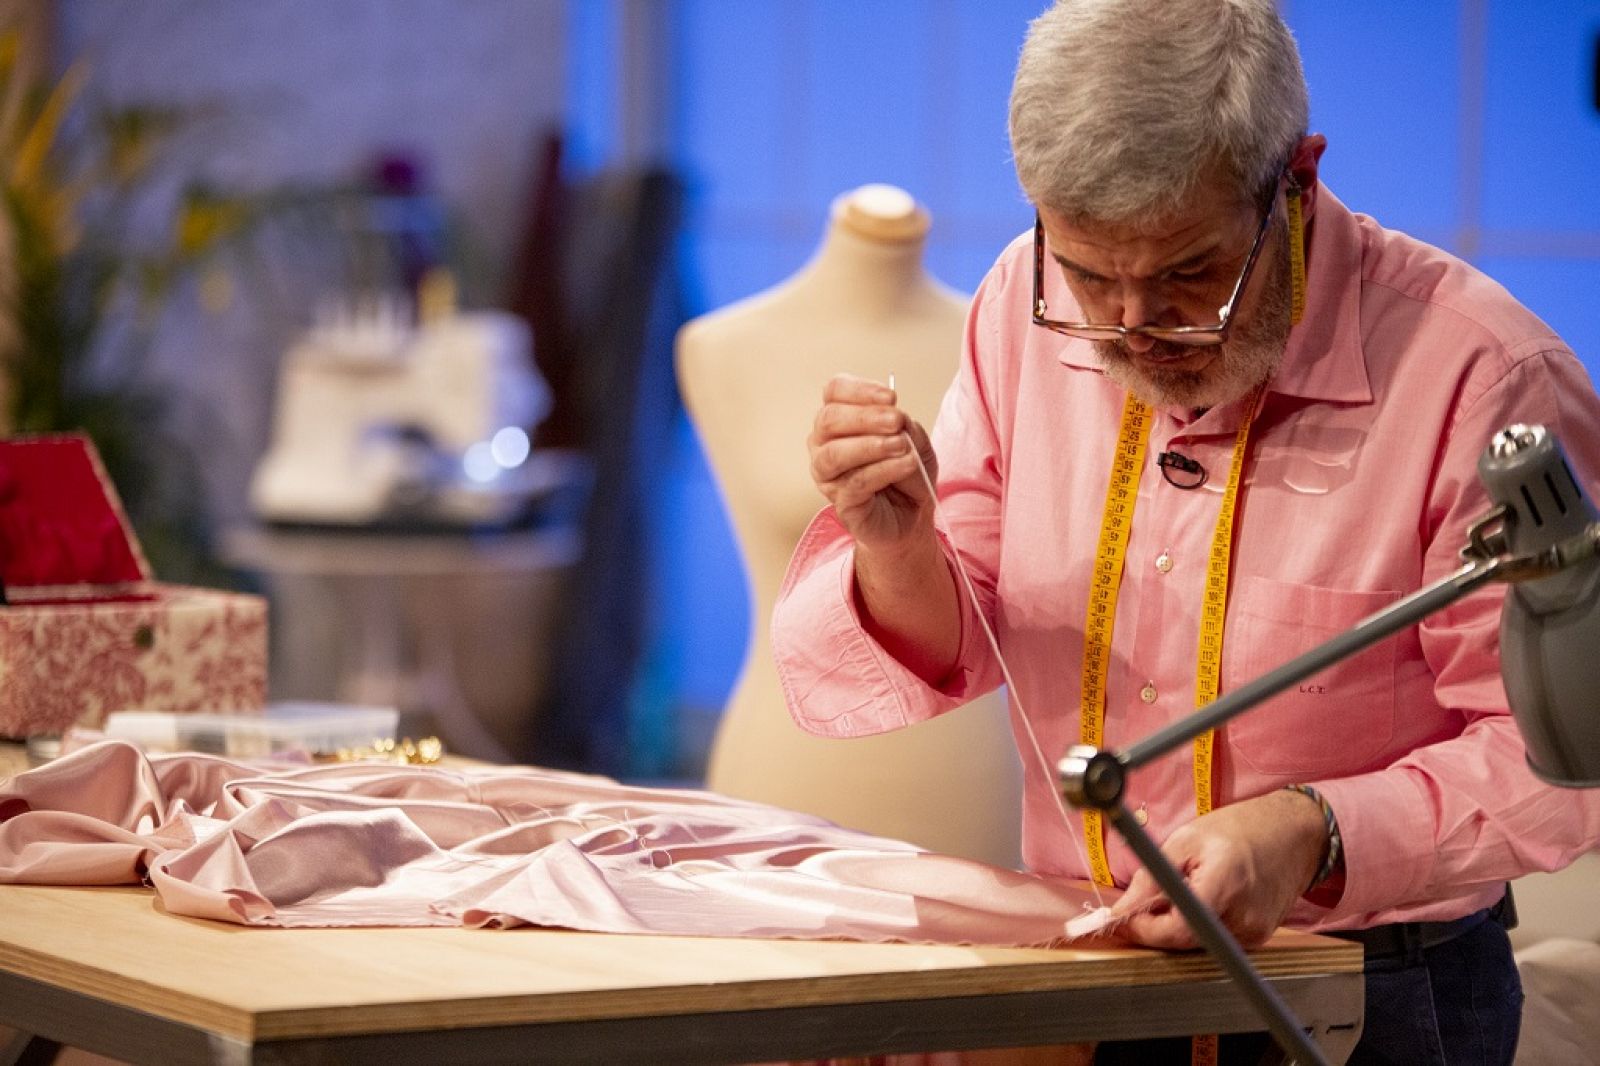 Maestros de la Costura: Lorenzo Caprile cose junto a los aprendices